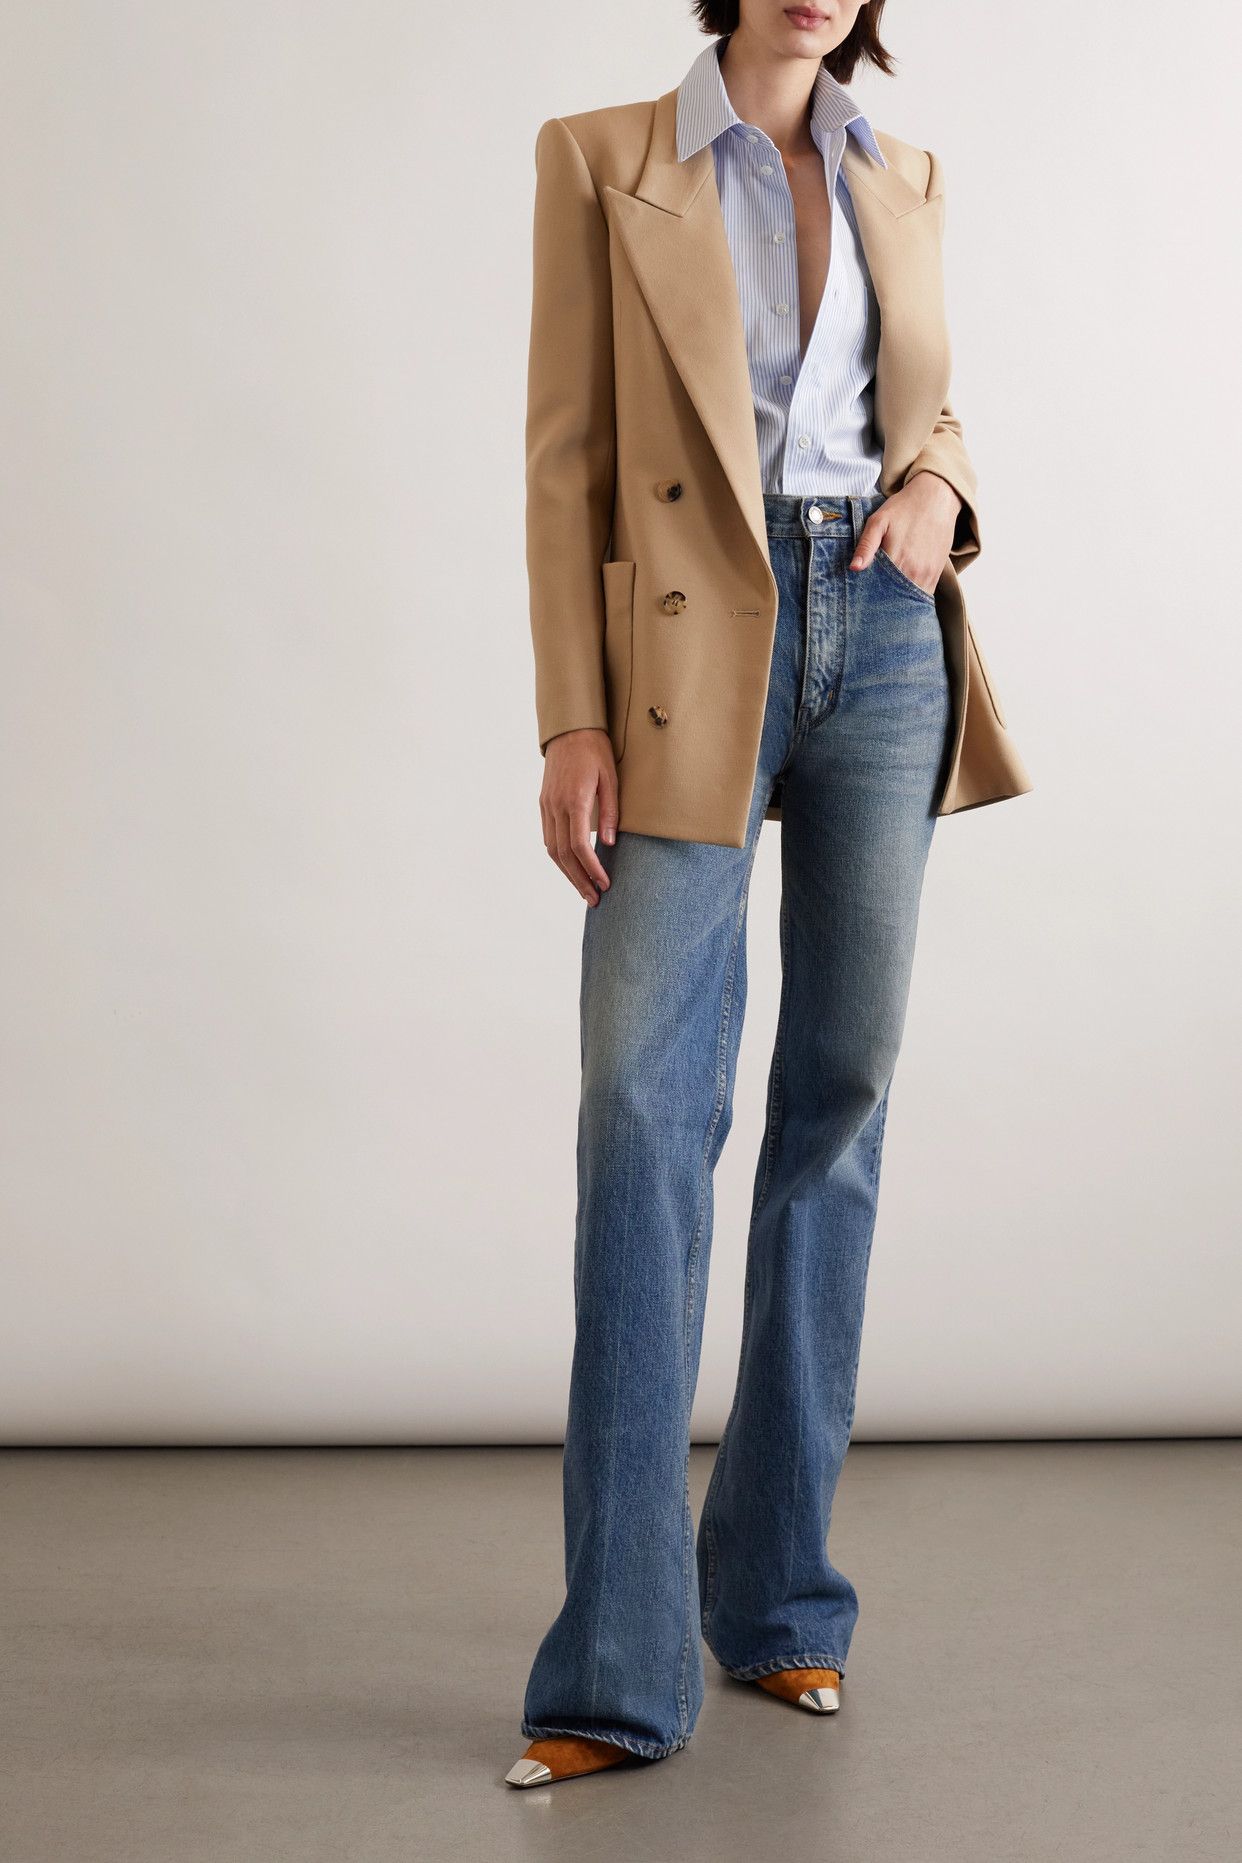 15 Cozy & Lean Cotton Blazer Outfit Ideas for Ladies